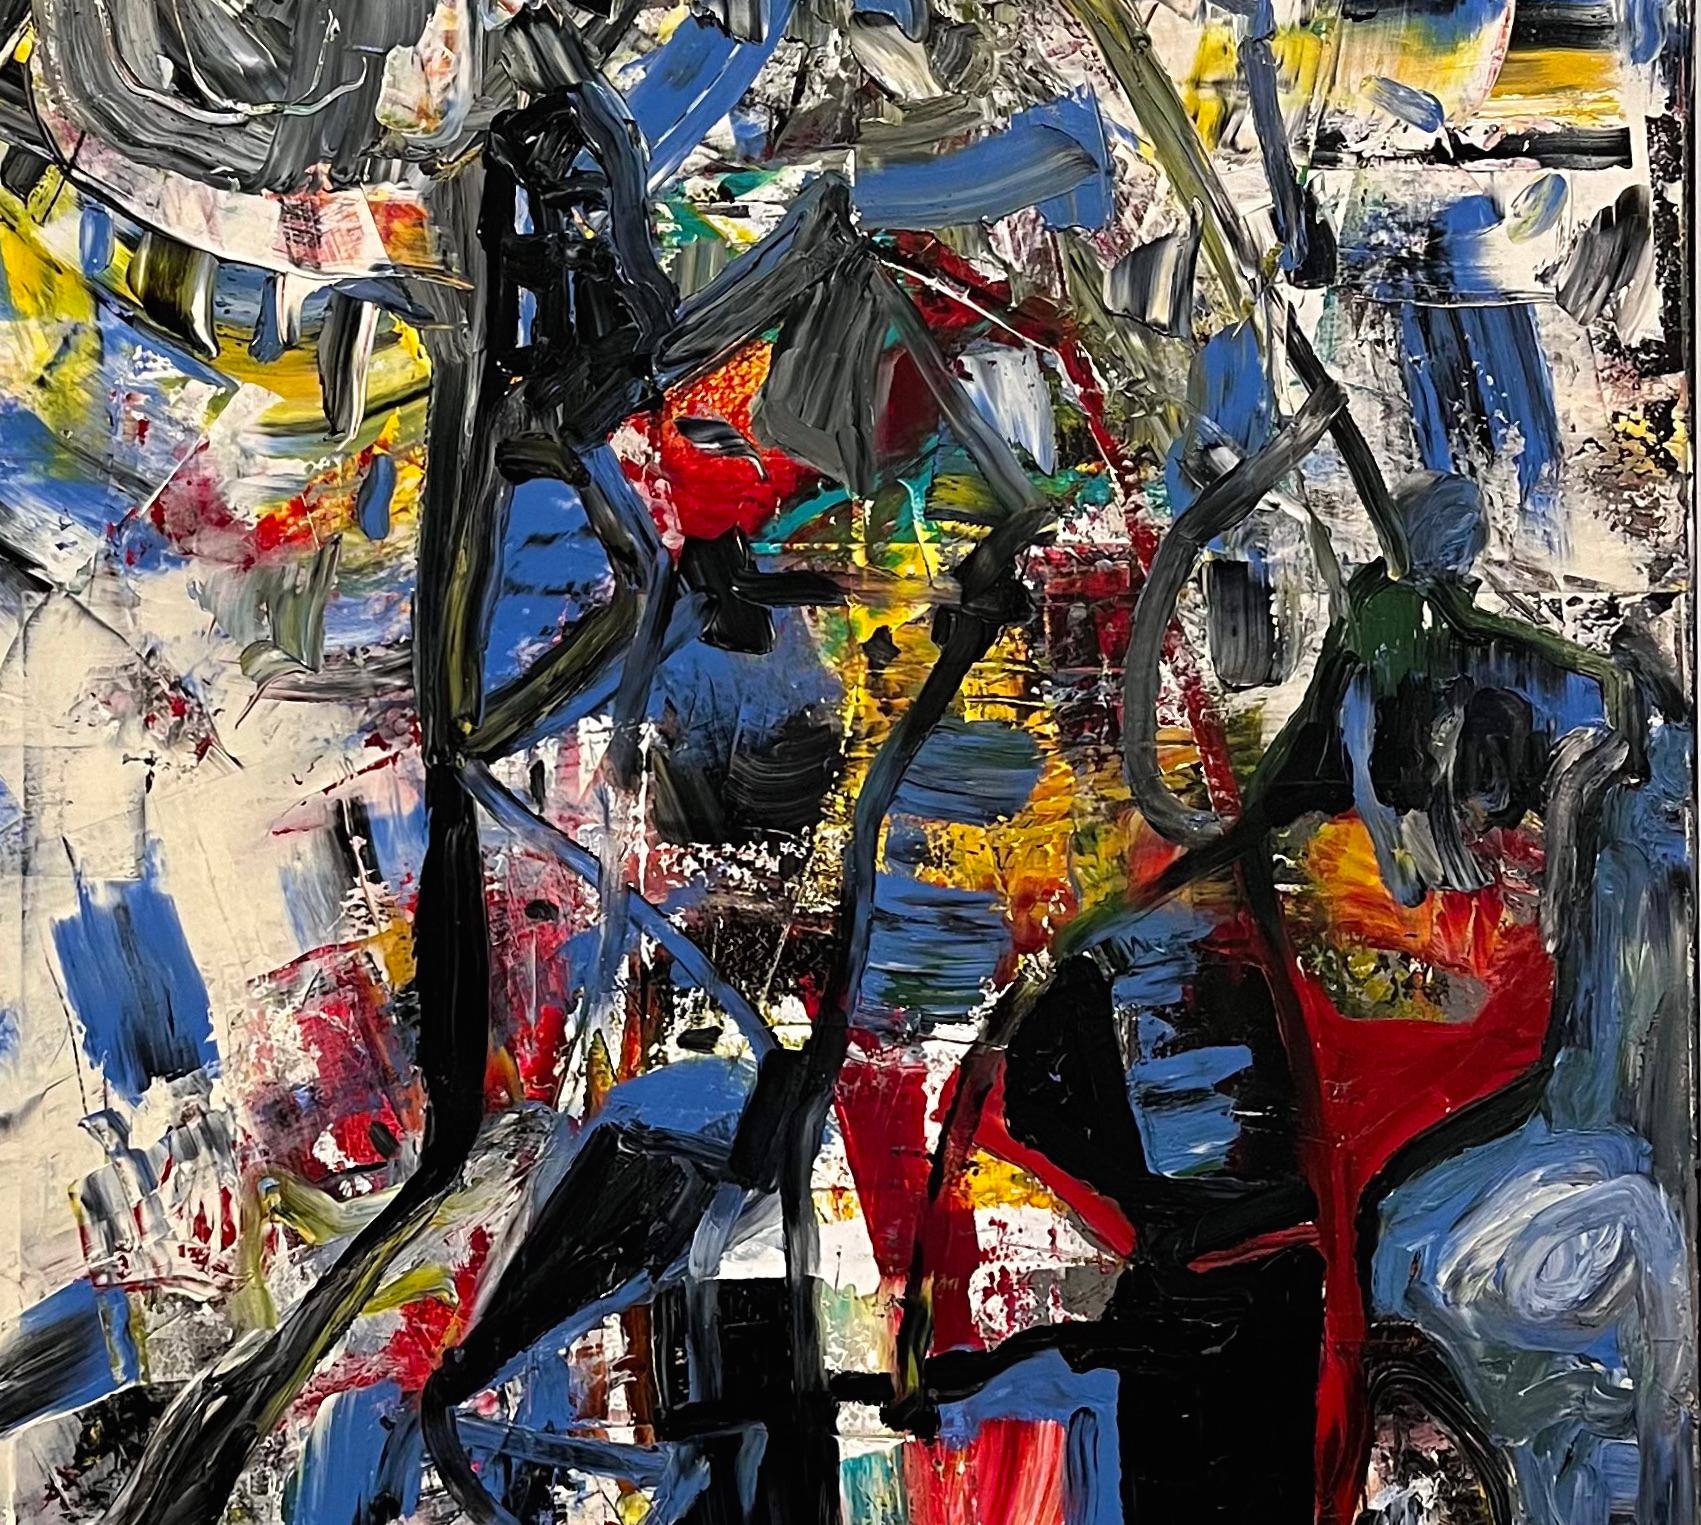 Cette peinture à l'huile abstraite de Dick Wray, artiste de Houston aujourd'hui décédé, exprime une énergie cinétique saisissante. D'épaisses couches de peinture favorisent une tactilité remarquable que l'on retrouve fréquemment dans les œuvres de